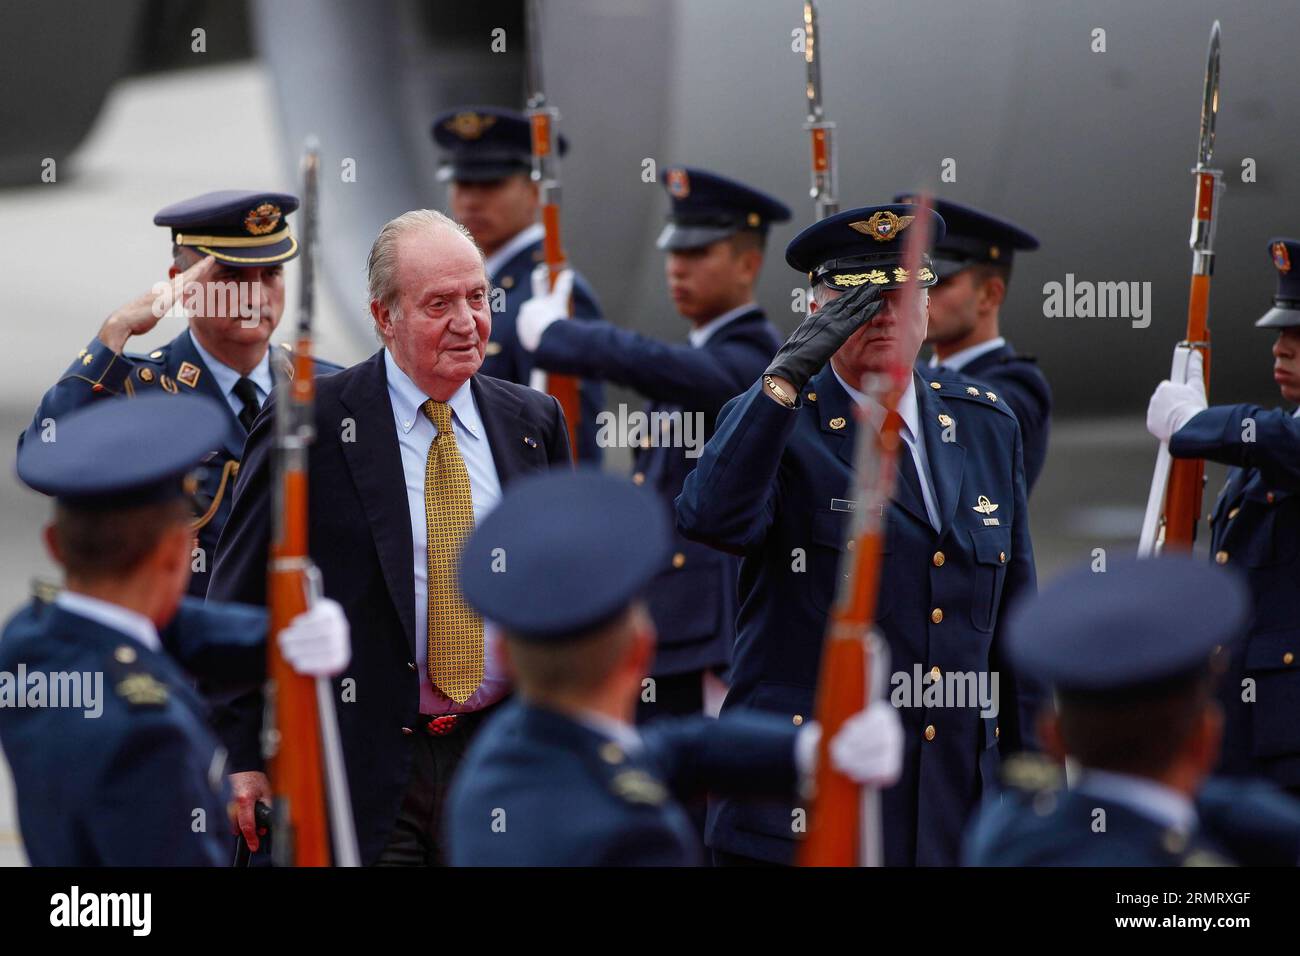 (140805) -- BOGOTA, 5 août 2014 -- l'ancien roi d'Espagne Juan Carlos I inspecte la garde d'honneur lors d'une cérémonie de bienvenue à la base militaire de Catam, à Bogota, capitale de la Colombie, le 5 août 2014. Juan Carlos I est arrivé jeudi à Bogota pour assister à la cérémonie d'investiture du président colombien Juan Manuel Santos. Jhon Paz) (da) (sp) COLOMBIA-BOGOTA-SPAIN-POLITICS-VISIT e Jhonpaz PUBLICATIONxNOTxINxCHN Bogota août 5 2014 Espagne S ancien roi Juan Carlos J'inspecte la Garde D'HONNEUR lors d'une cérémonie de bienvenue À la base militaire de Bogota capitale de la Colombie LE 5 2014 août Jua Banque D'Images